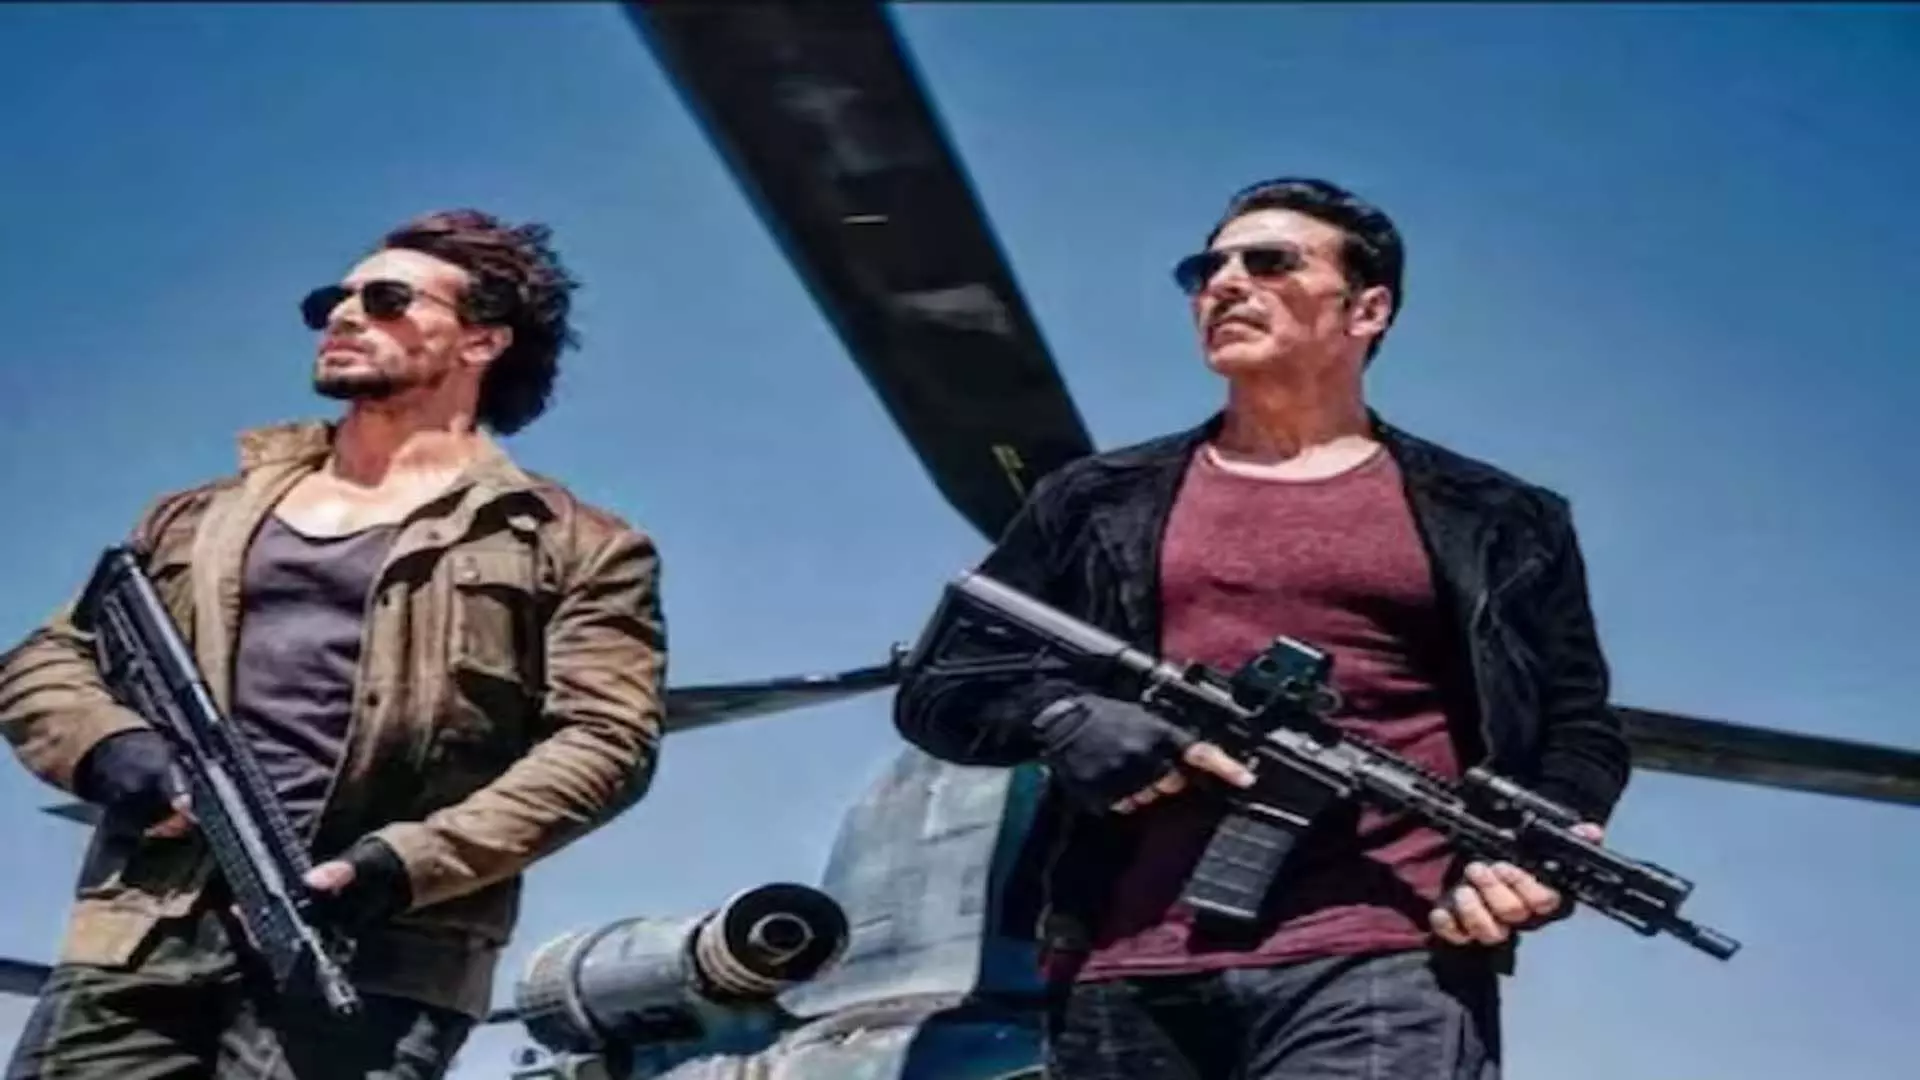 अक्षय कुमार-टाइगर श्रॉफ की फिल्म ने जोरदार कमाई की, 21 करोड़ रुपये कमाए